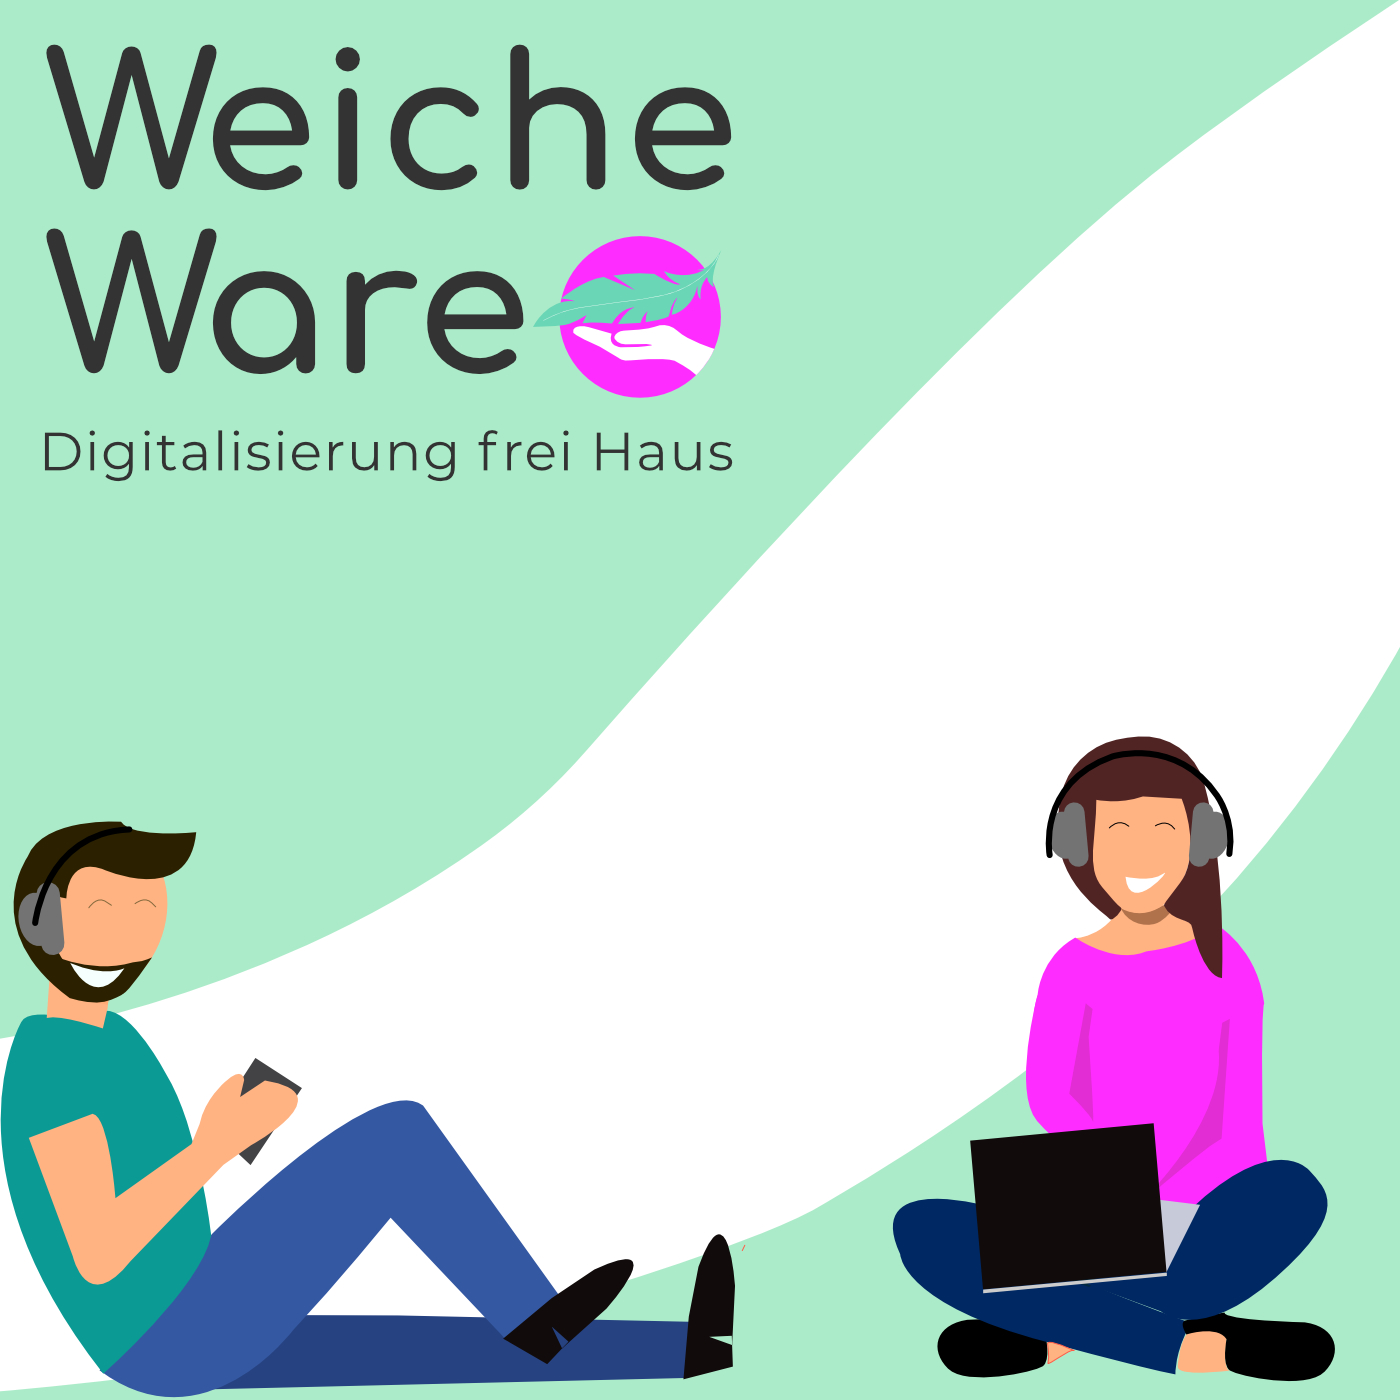 Digitalisierung frei Haus: TenMedia startet Podcast